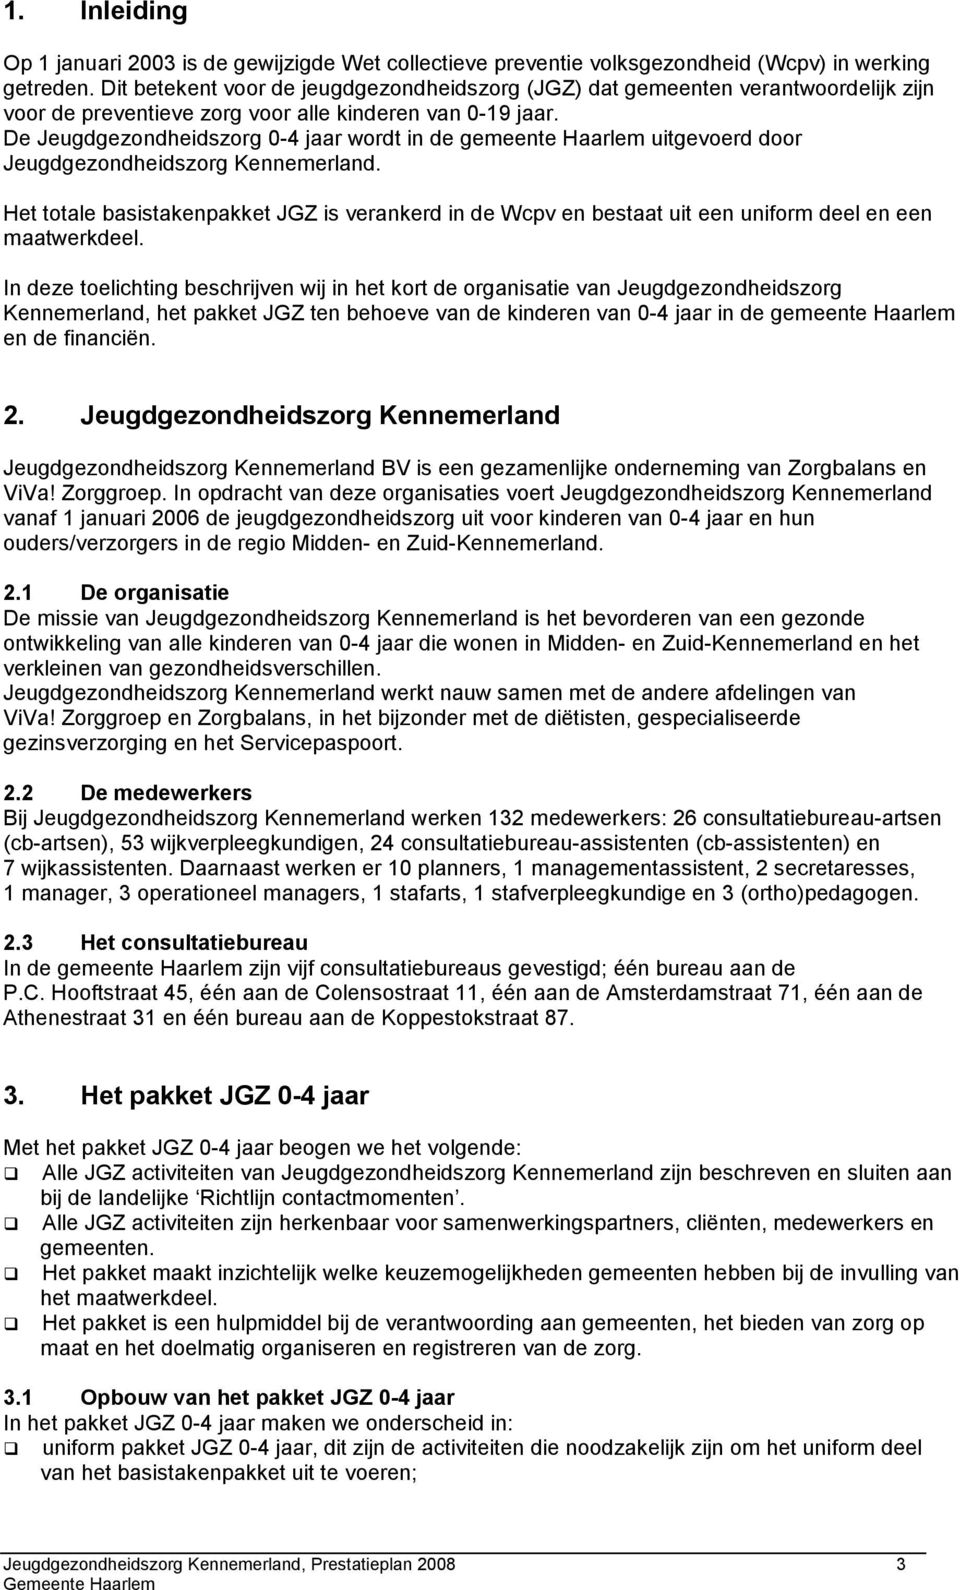 De Jeugdgezondheidszorg 0-4 jaar wordt in de gemeente Haarlem uitgevoerd door Jeugdgezondheidszorg Kennemerland.